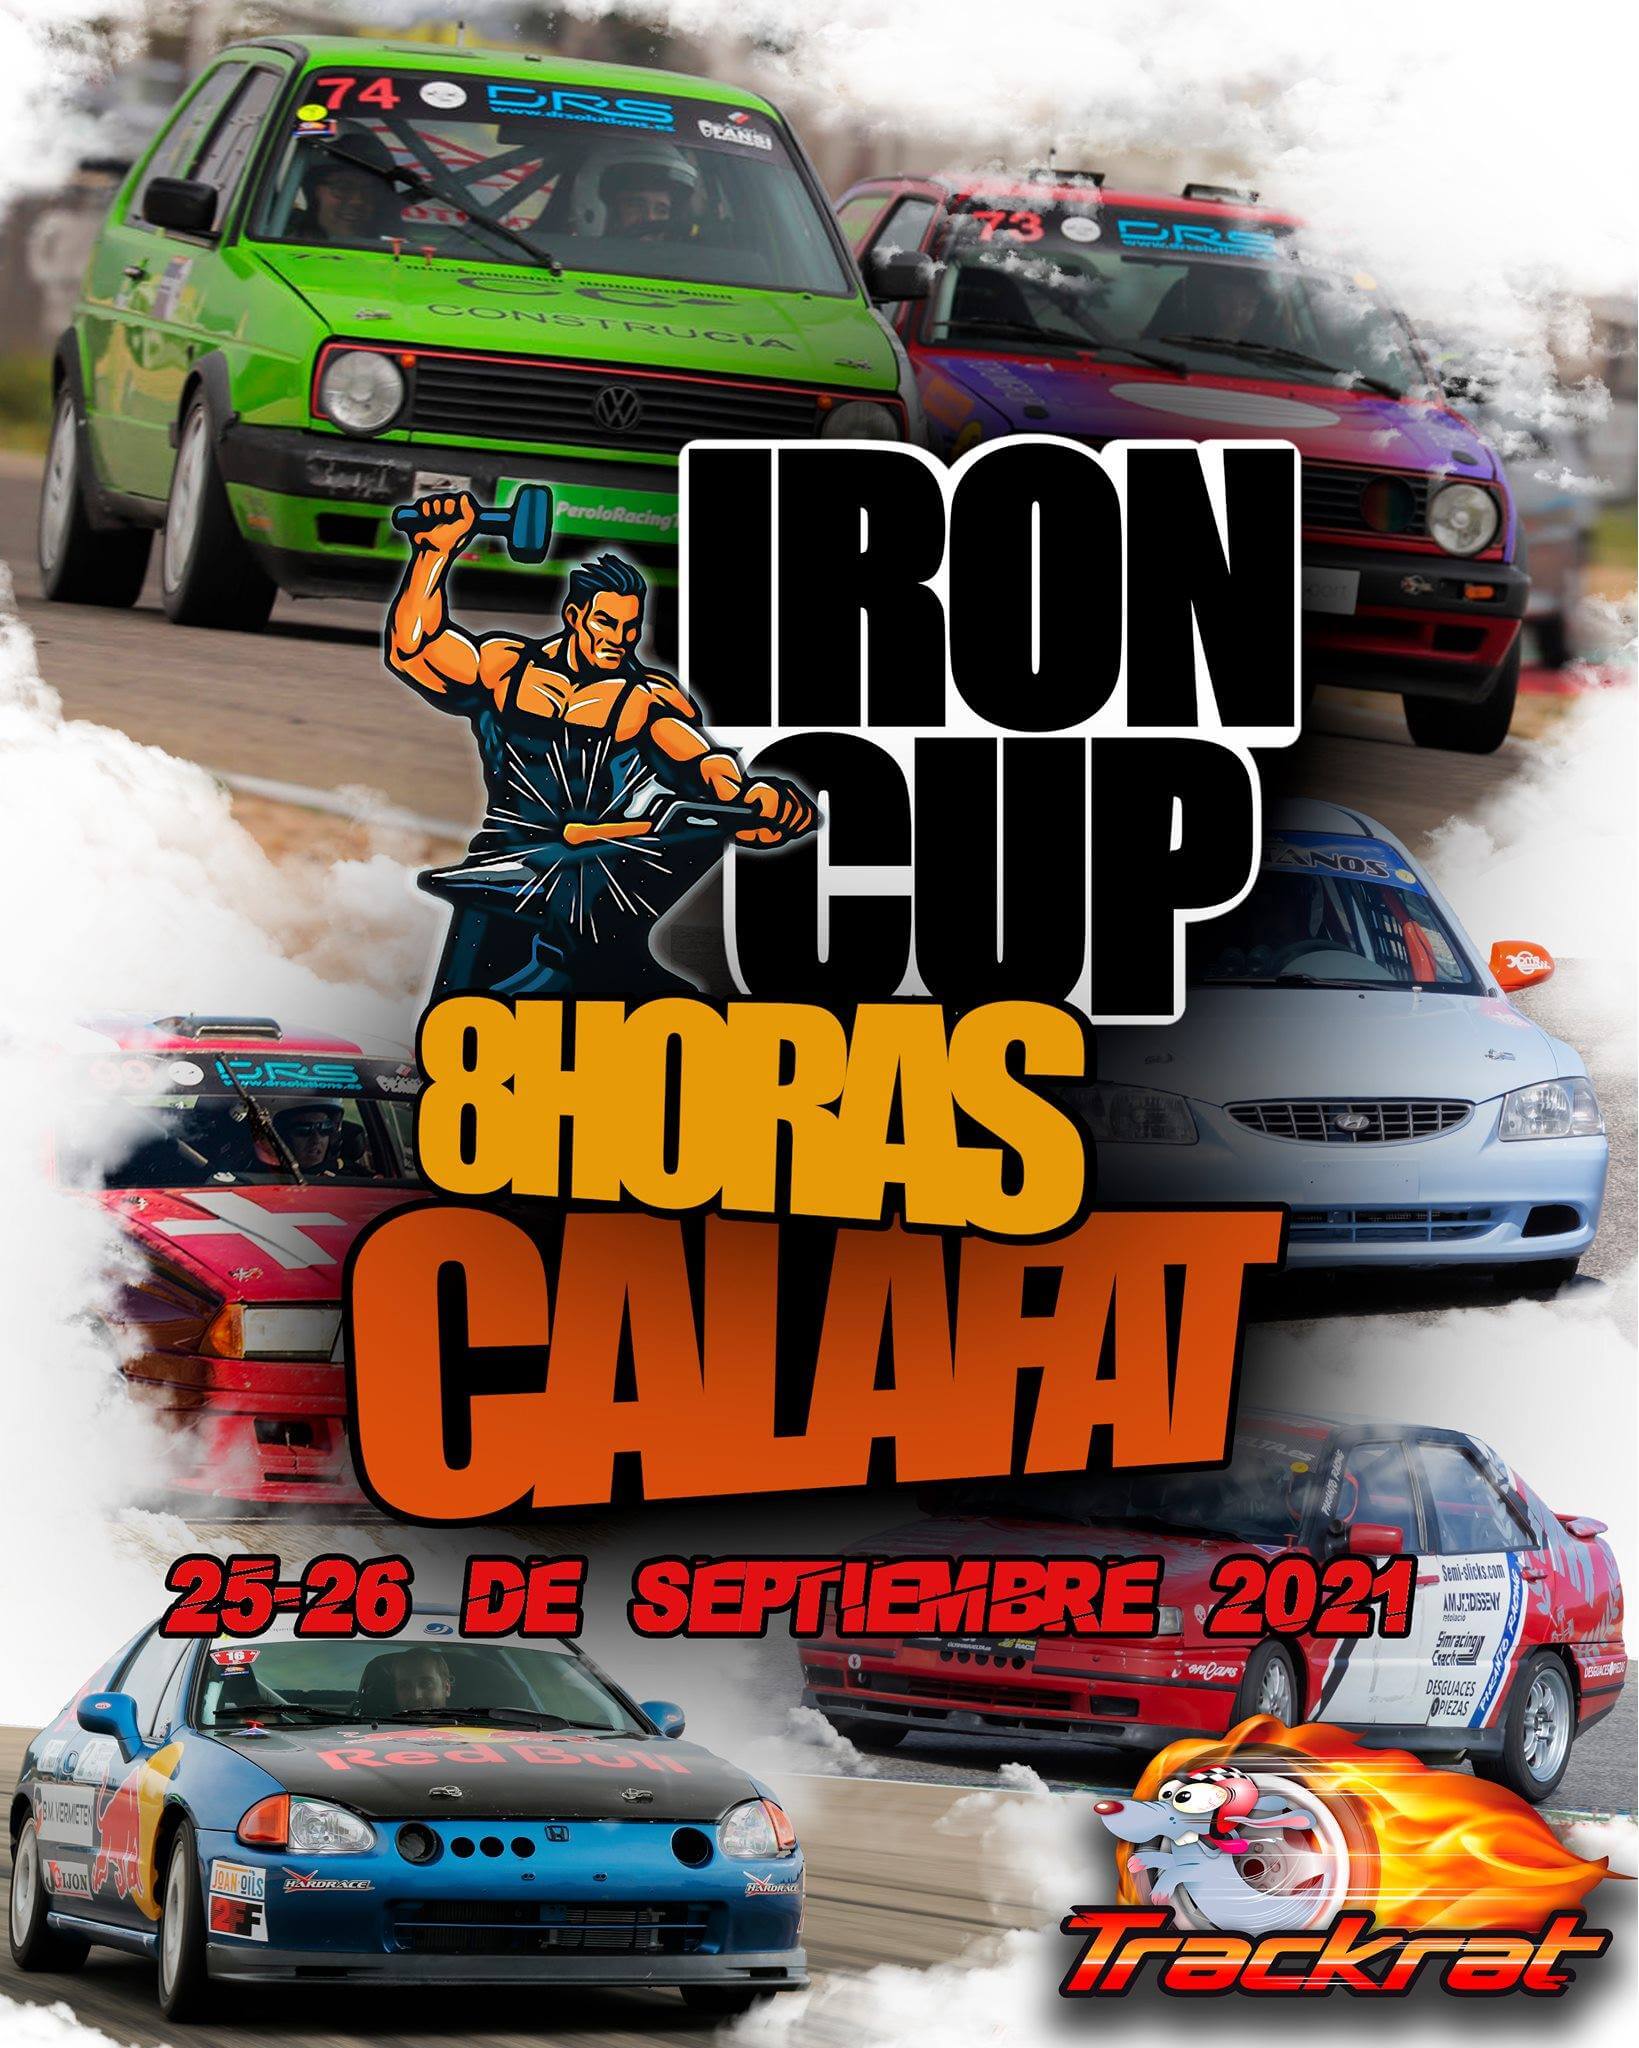 Iron Cup 8h en Calafat